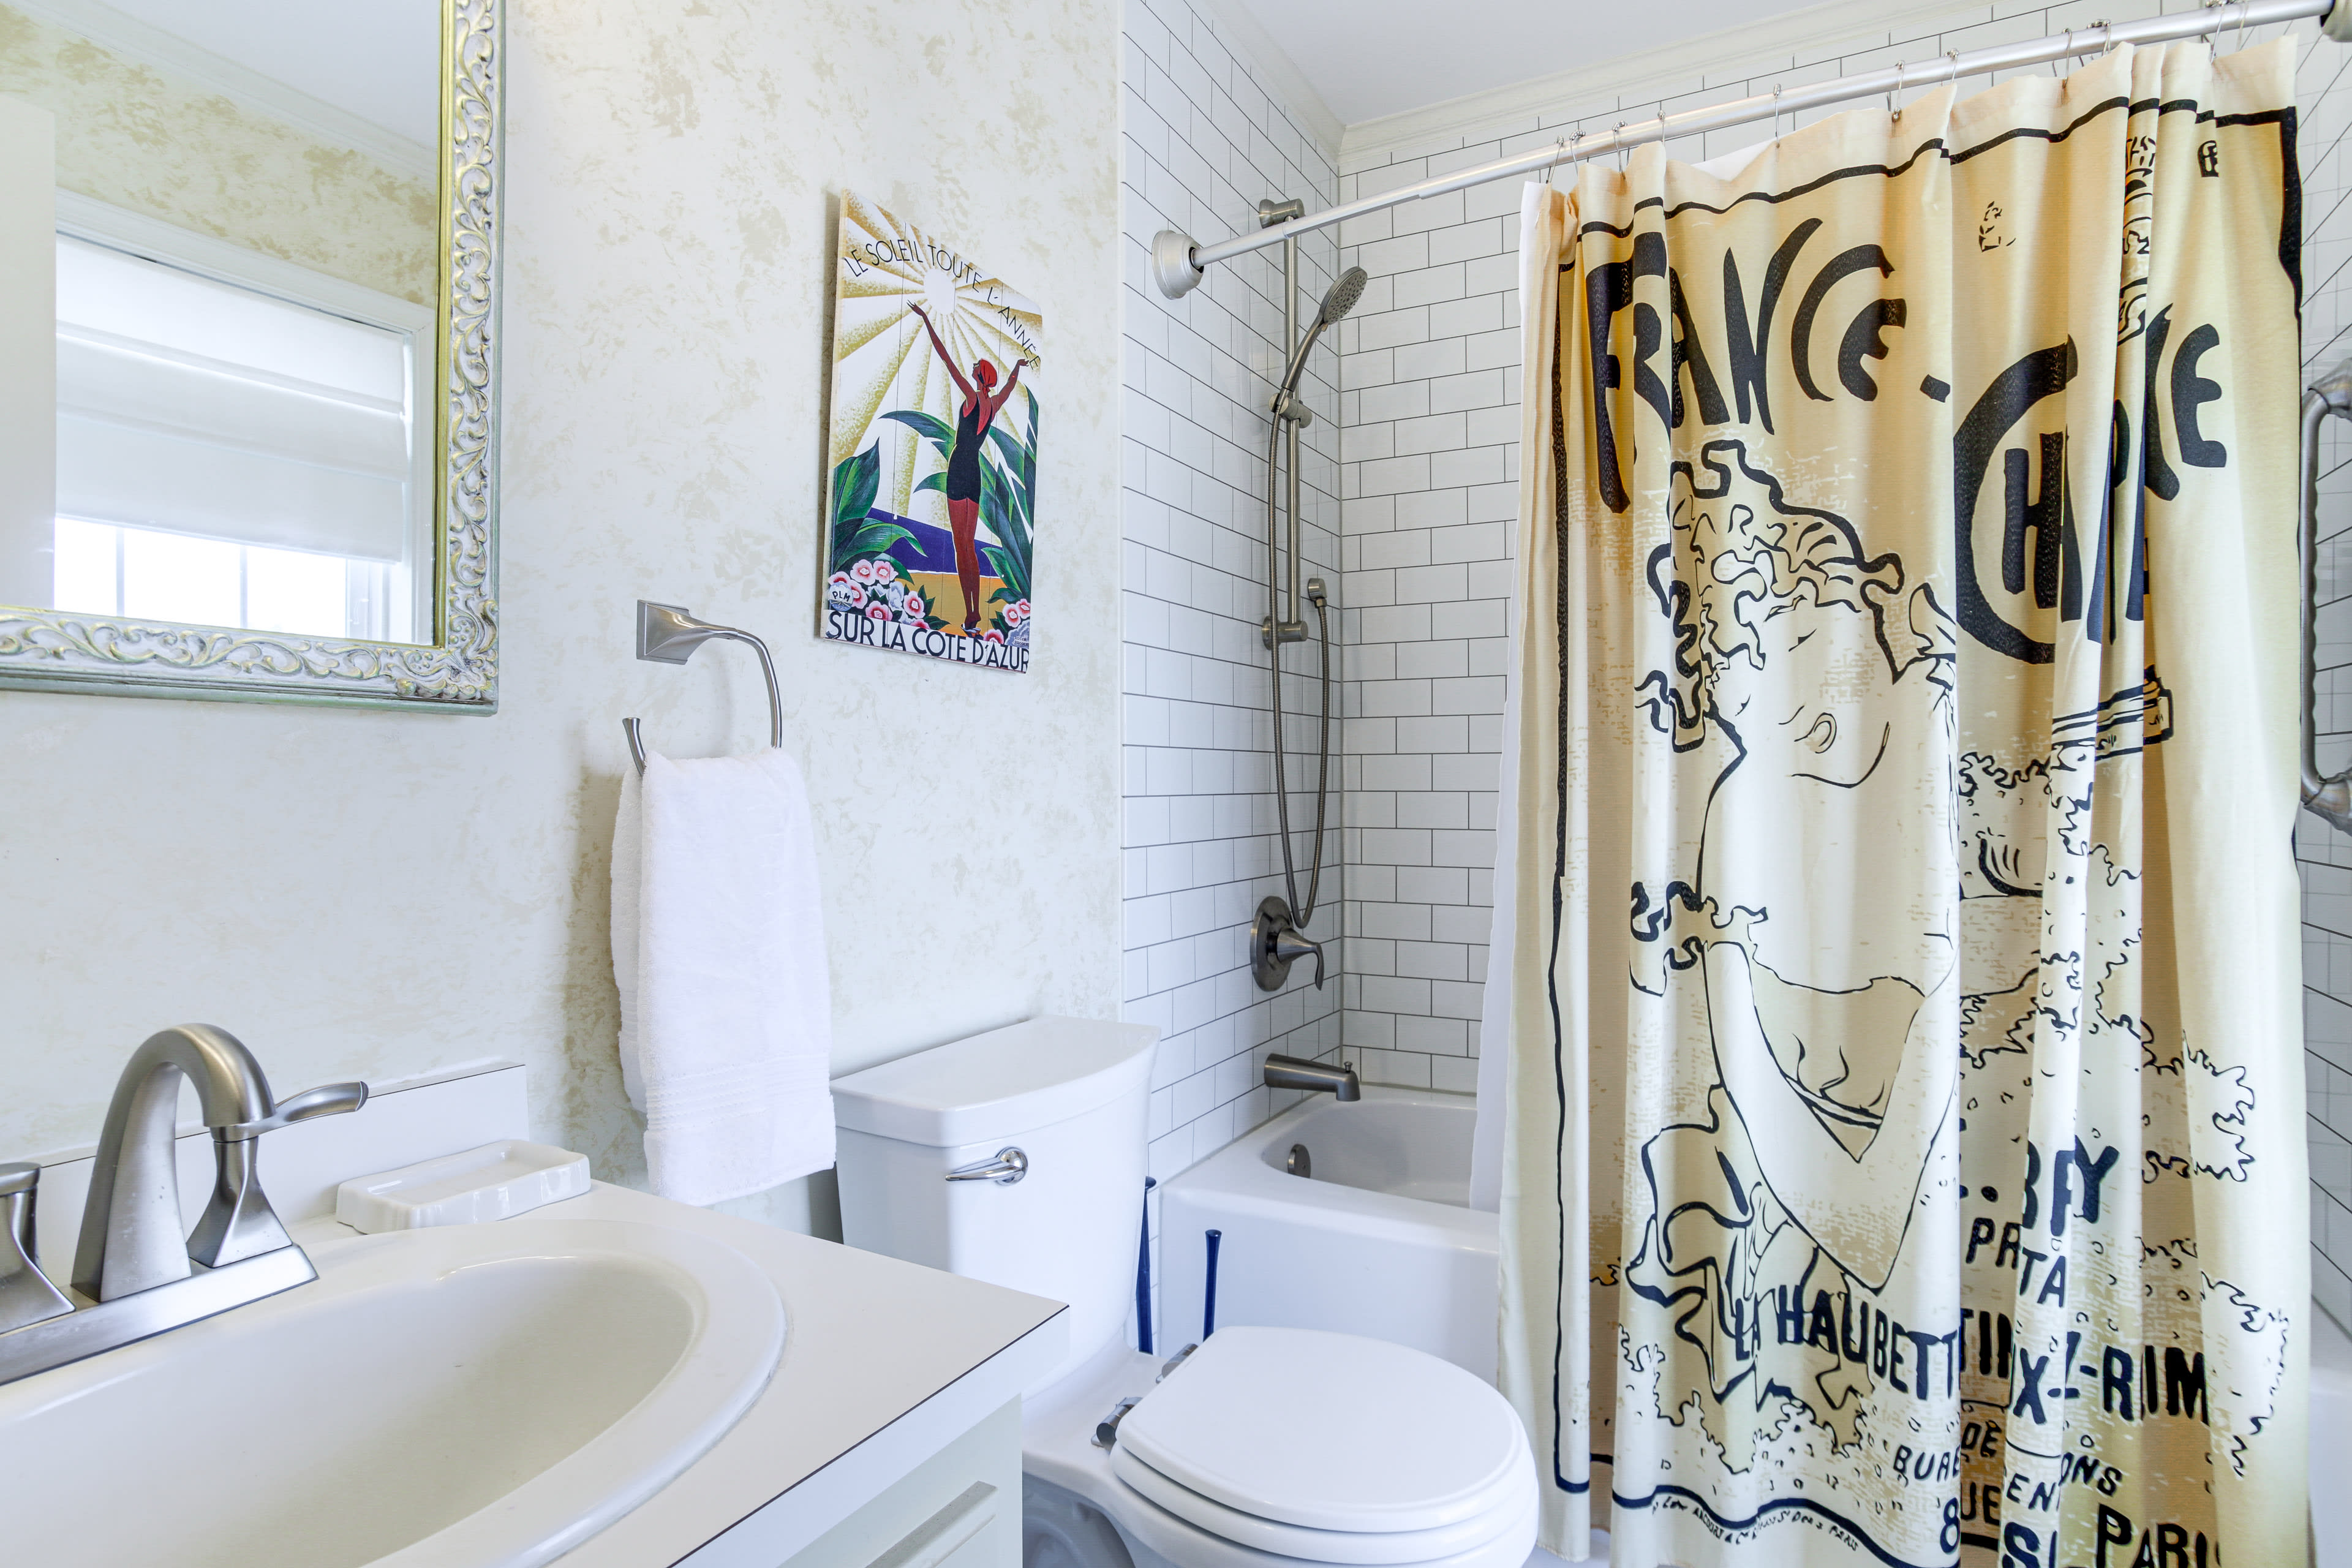 En-Suite Bathroom | 2nd Floor | Complimentary Toiletries | Hair Dryer